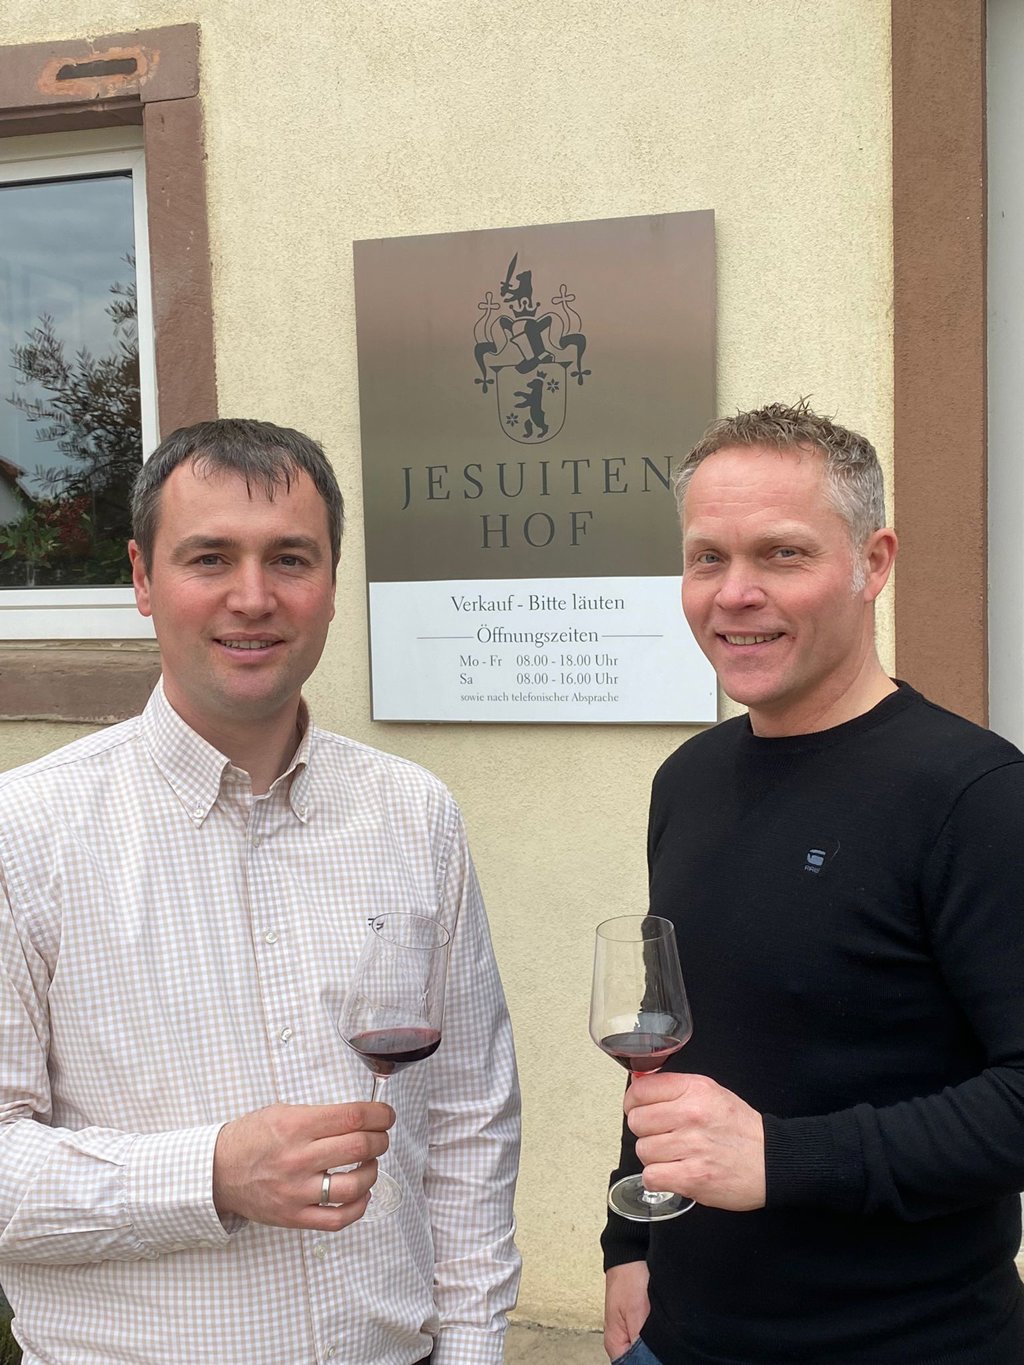 Links wijnmaker Moritz Schneider met rechts Hans Steevers van de Druiventuin.